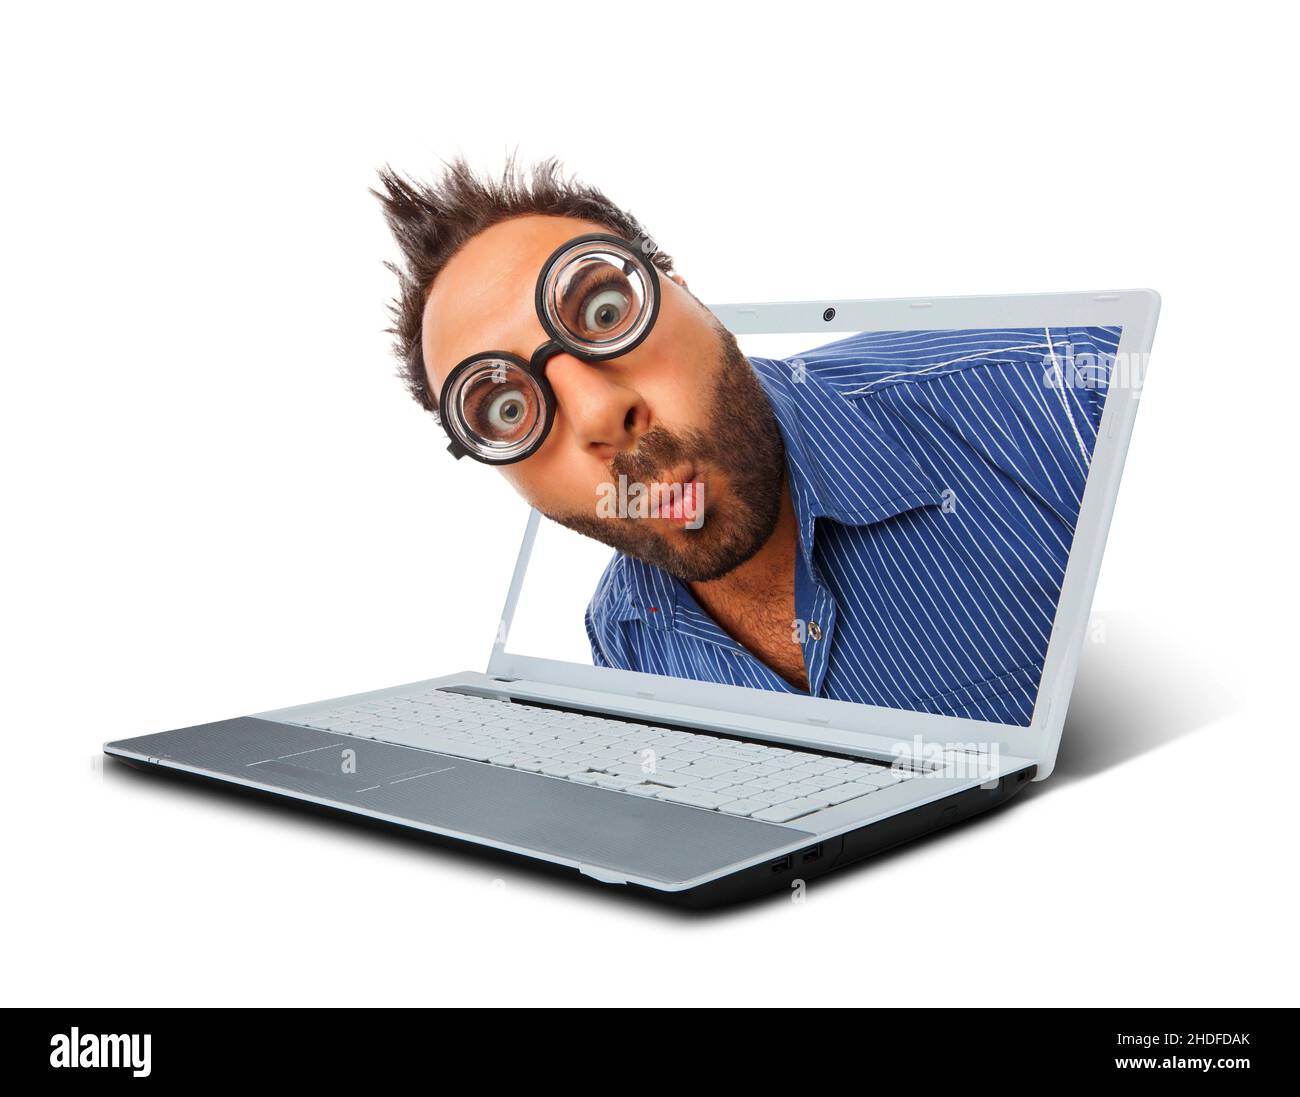 laptop, advertising, online, nerd, computer, computers, laptops, onlines, nerds, swot Stock Photo